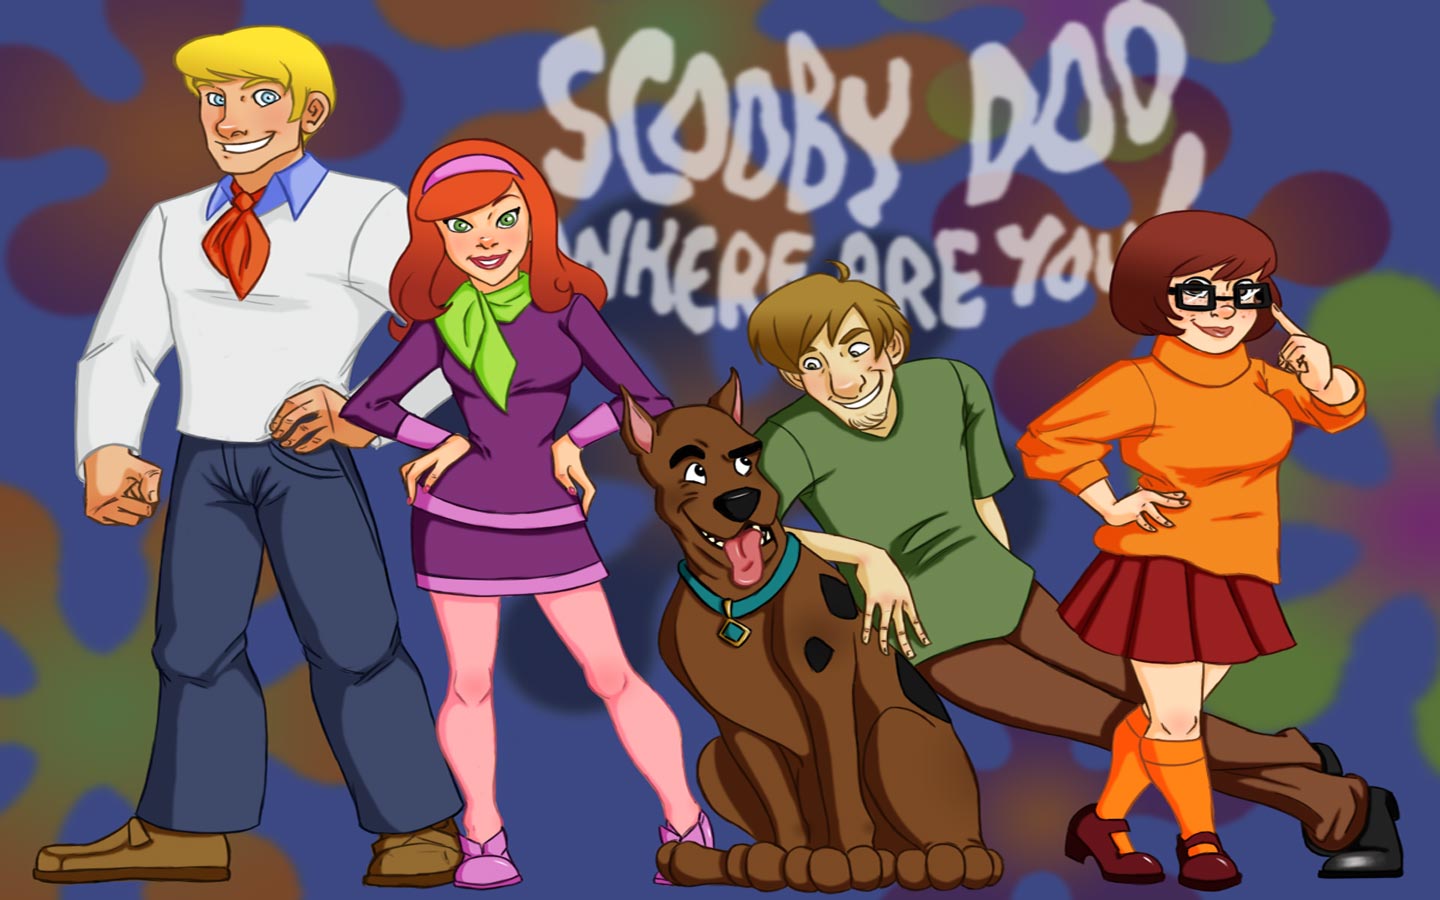 Wallpaper Scooby Doo